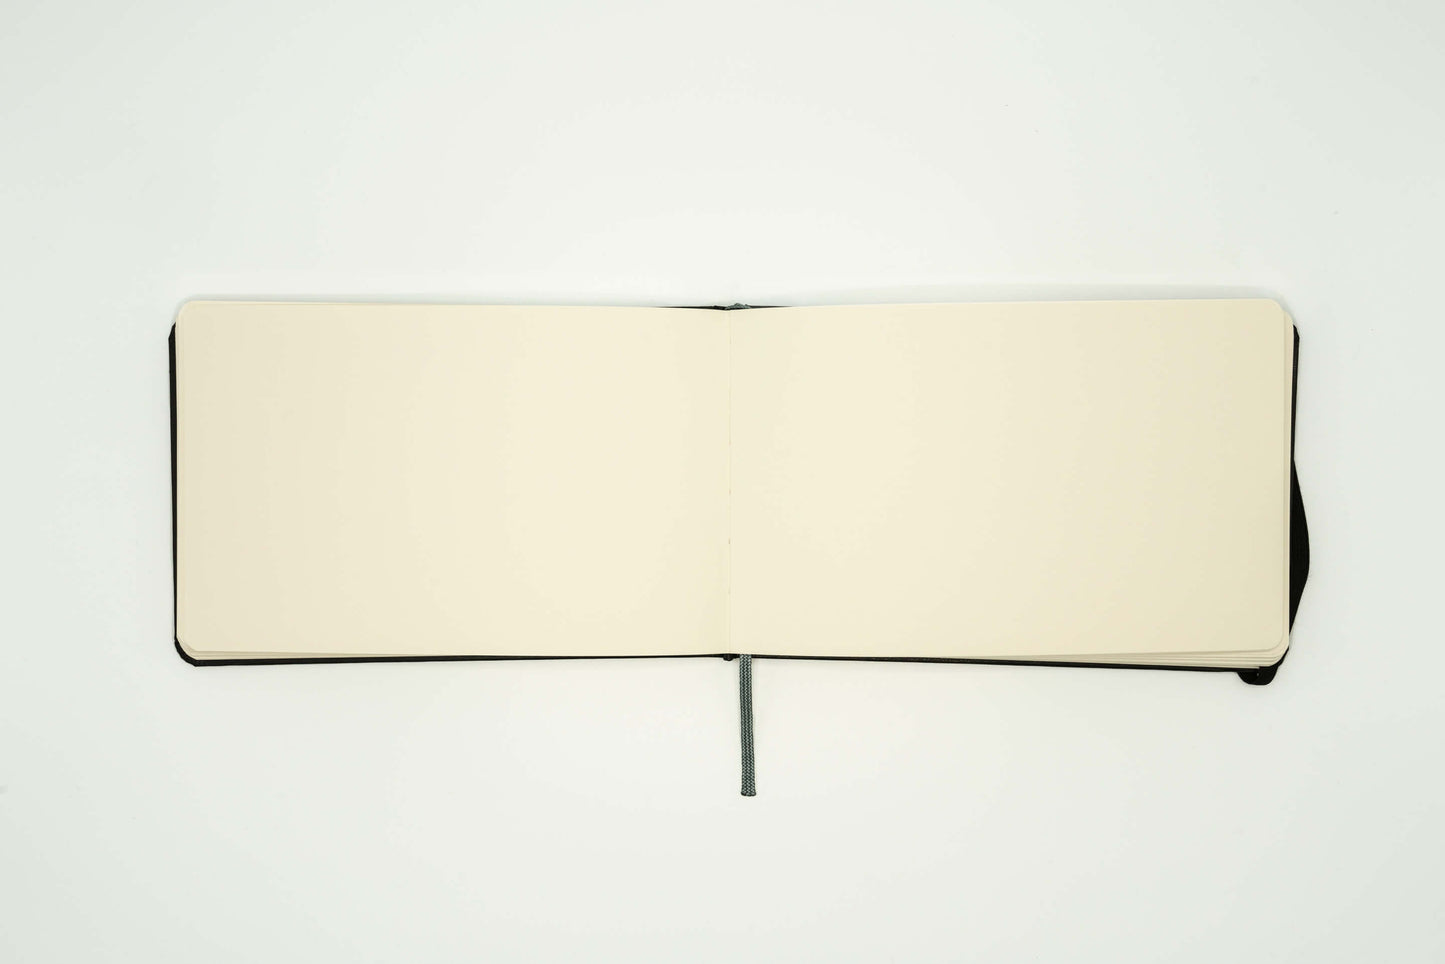 Hahnemühle Reisetagebuch – 13 x 21 cm Querformat